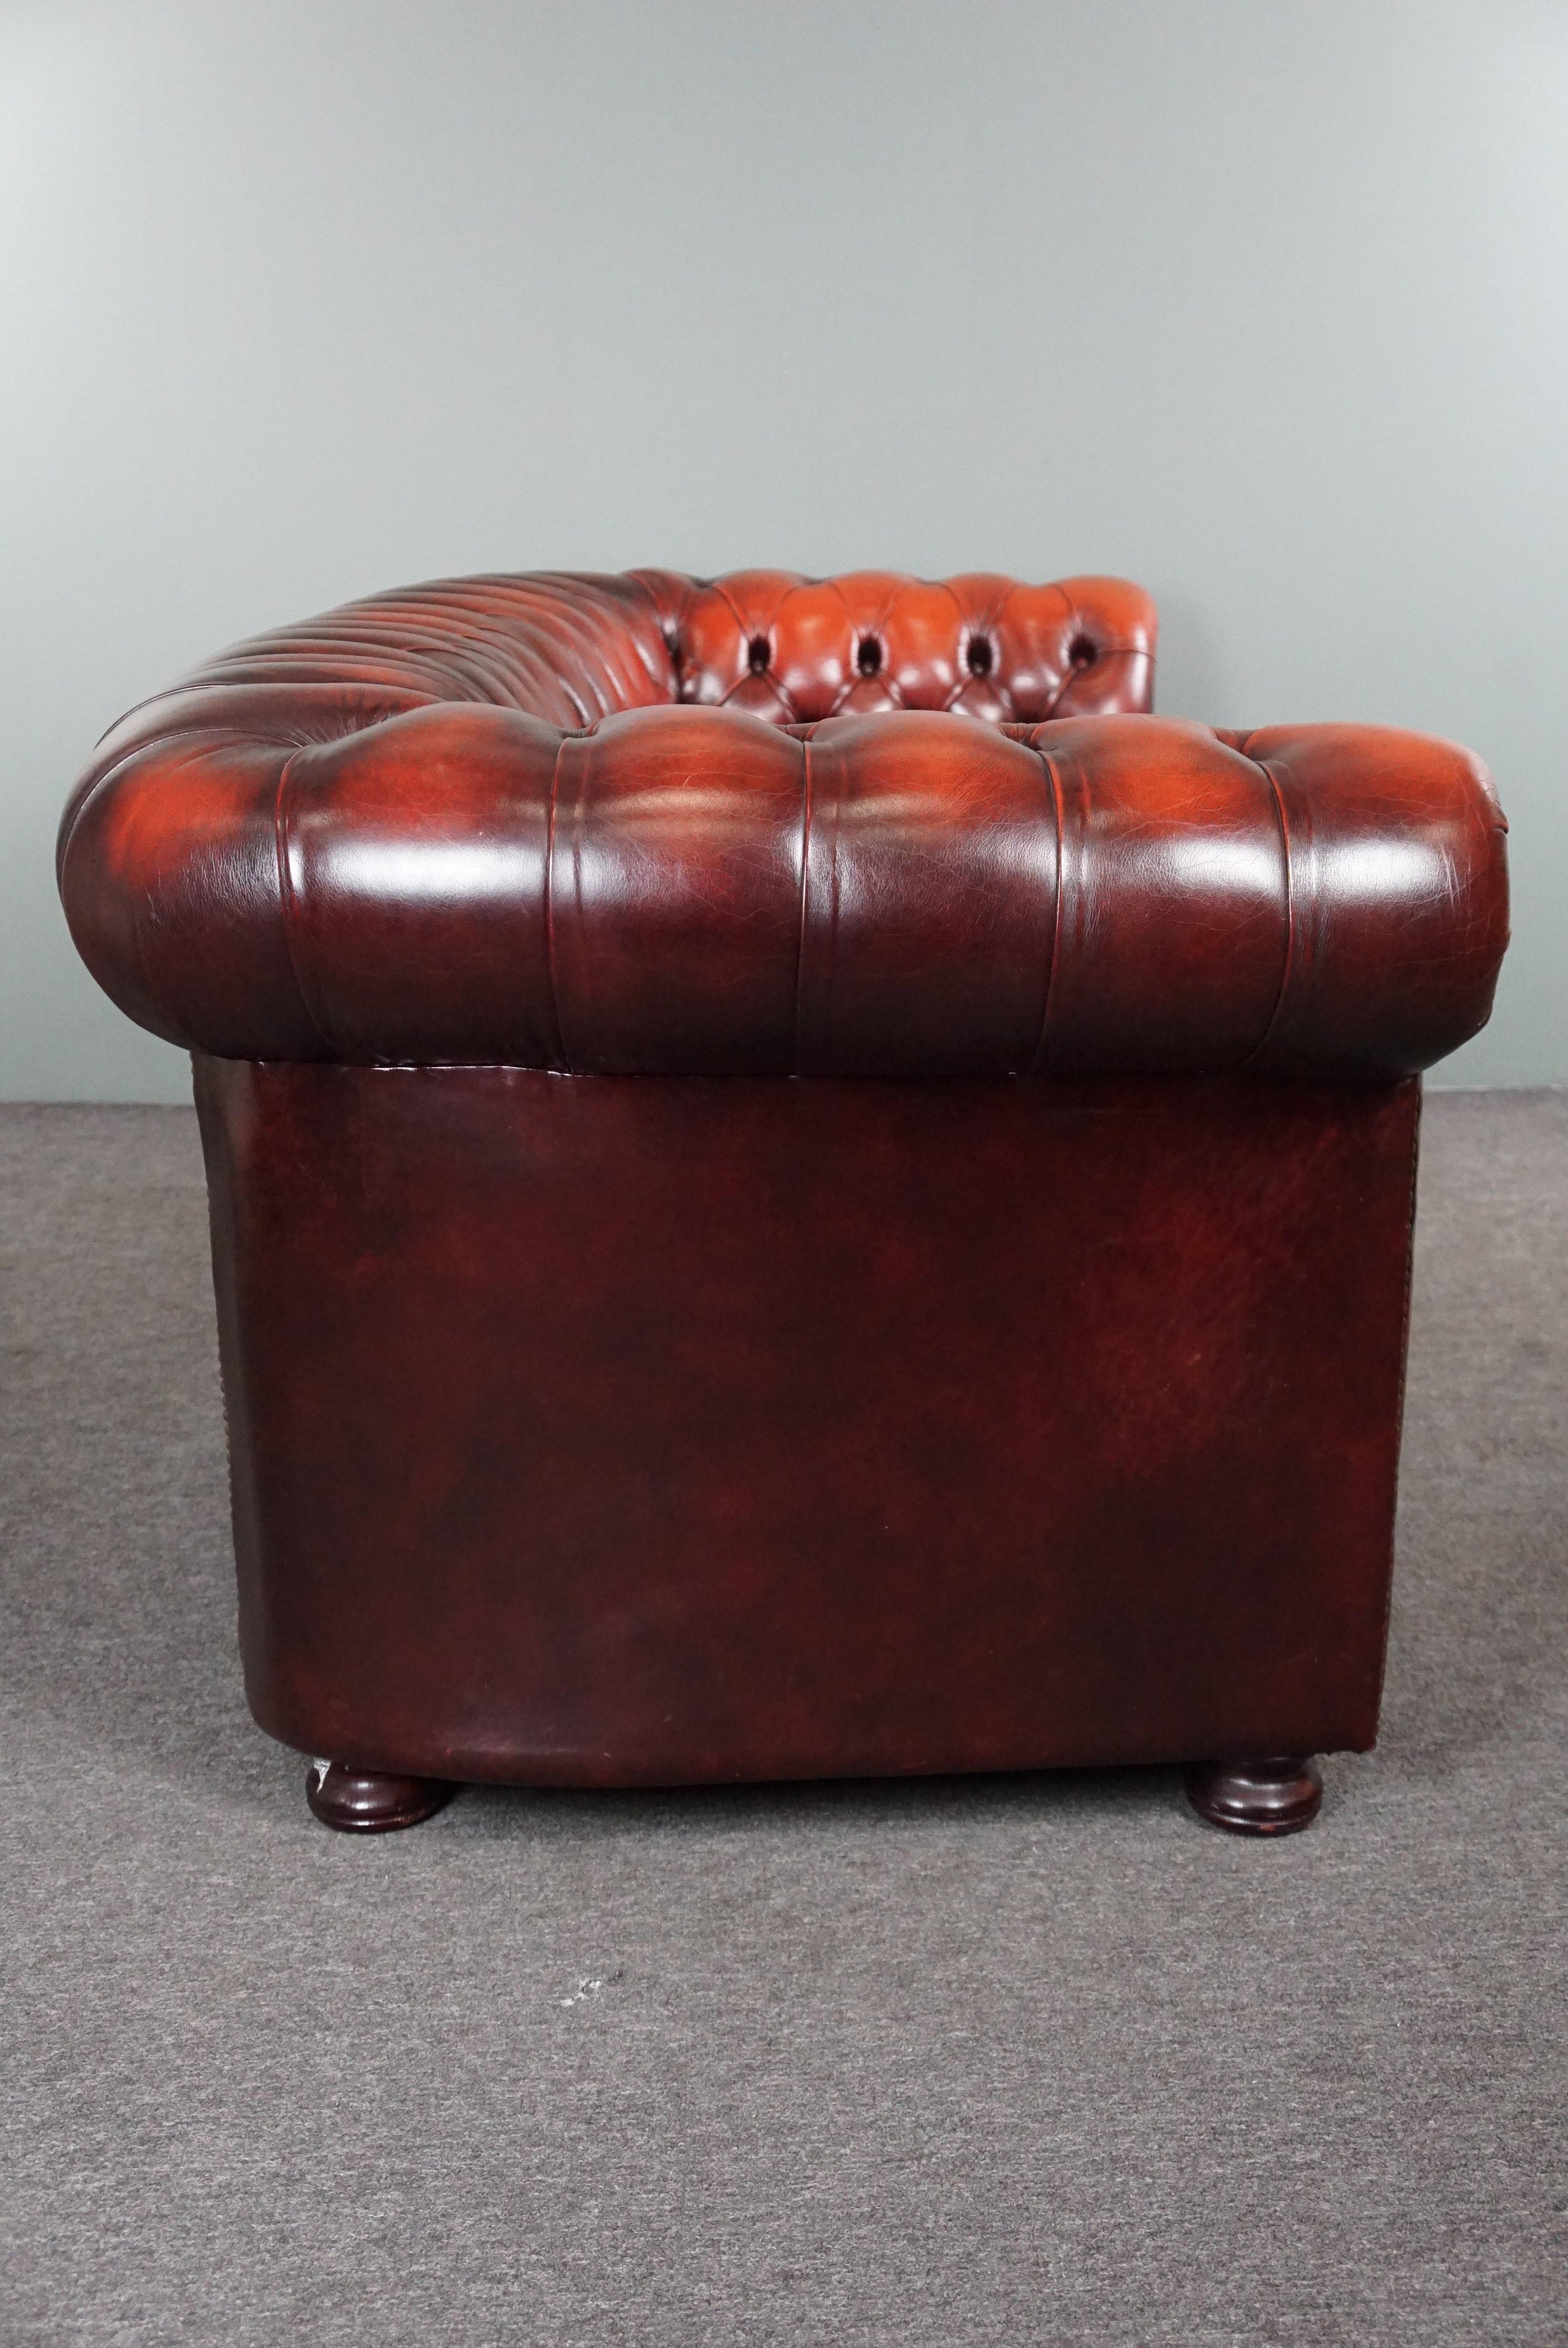 Angeboten wird dieses wunderbar sitzende, lebhaft gefärbte 2,5/3-sitzige Chesterfield-Sofa aus Rindsleder.

Dieses tiefrote Chesterfield-Sofa hat eine gepolsterte Rückenlehne und Armlehnen und ist mit Ziernägeln verziert, was ihm ein zeitloses